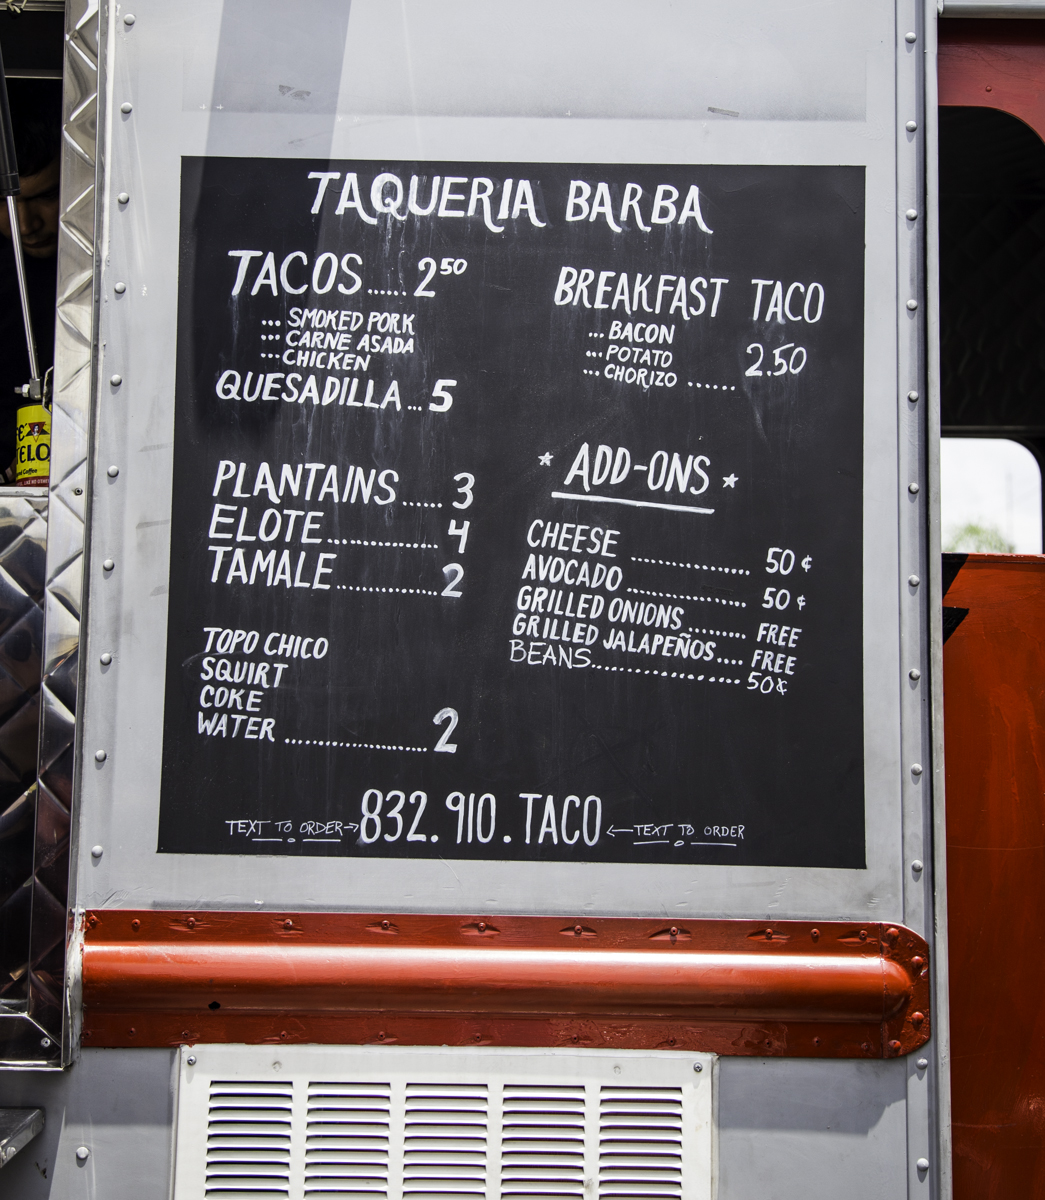 The menu at Taqueria Barba